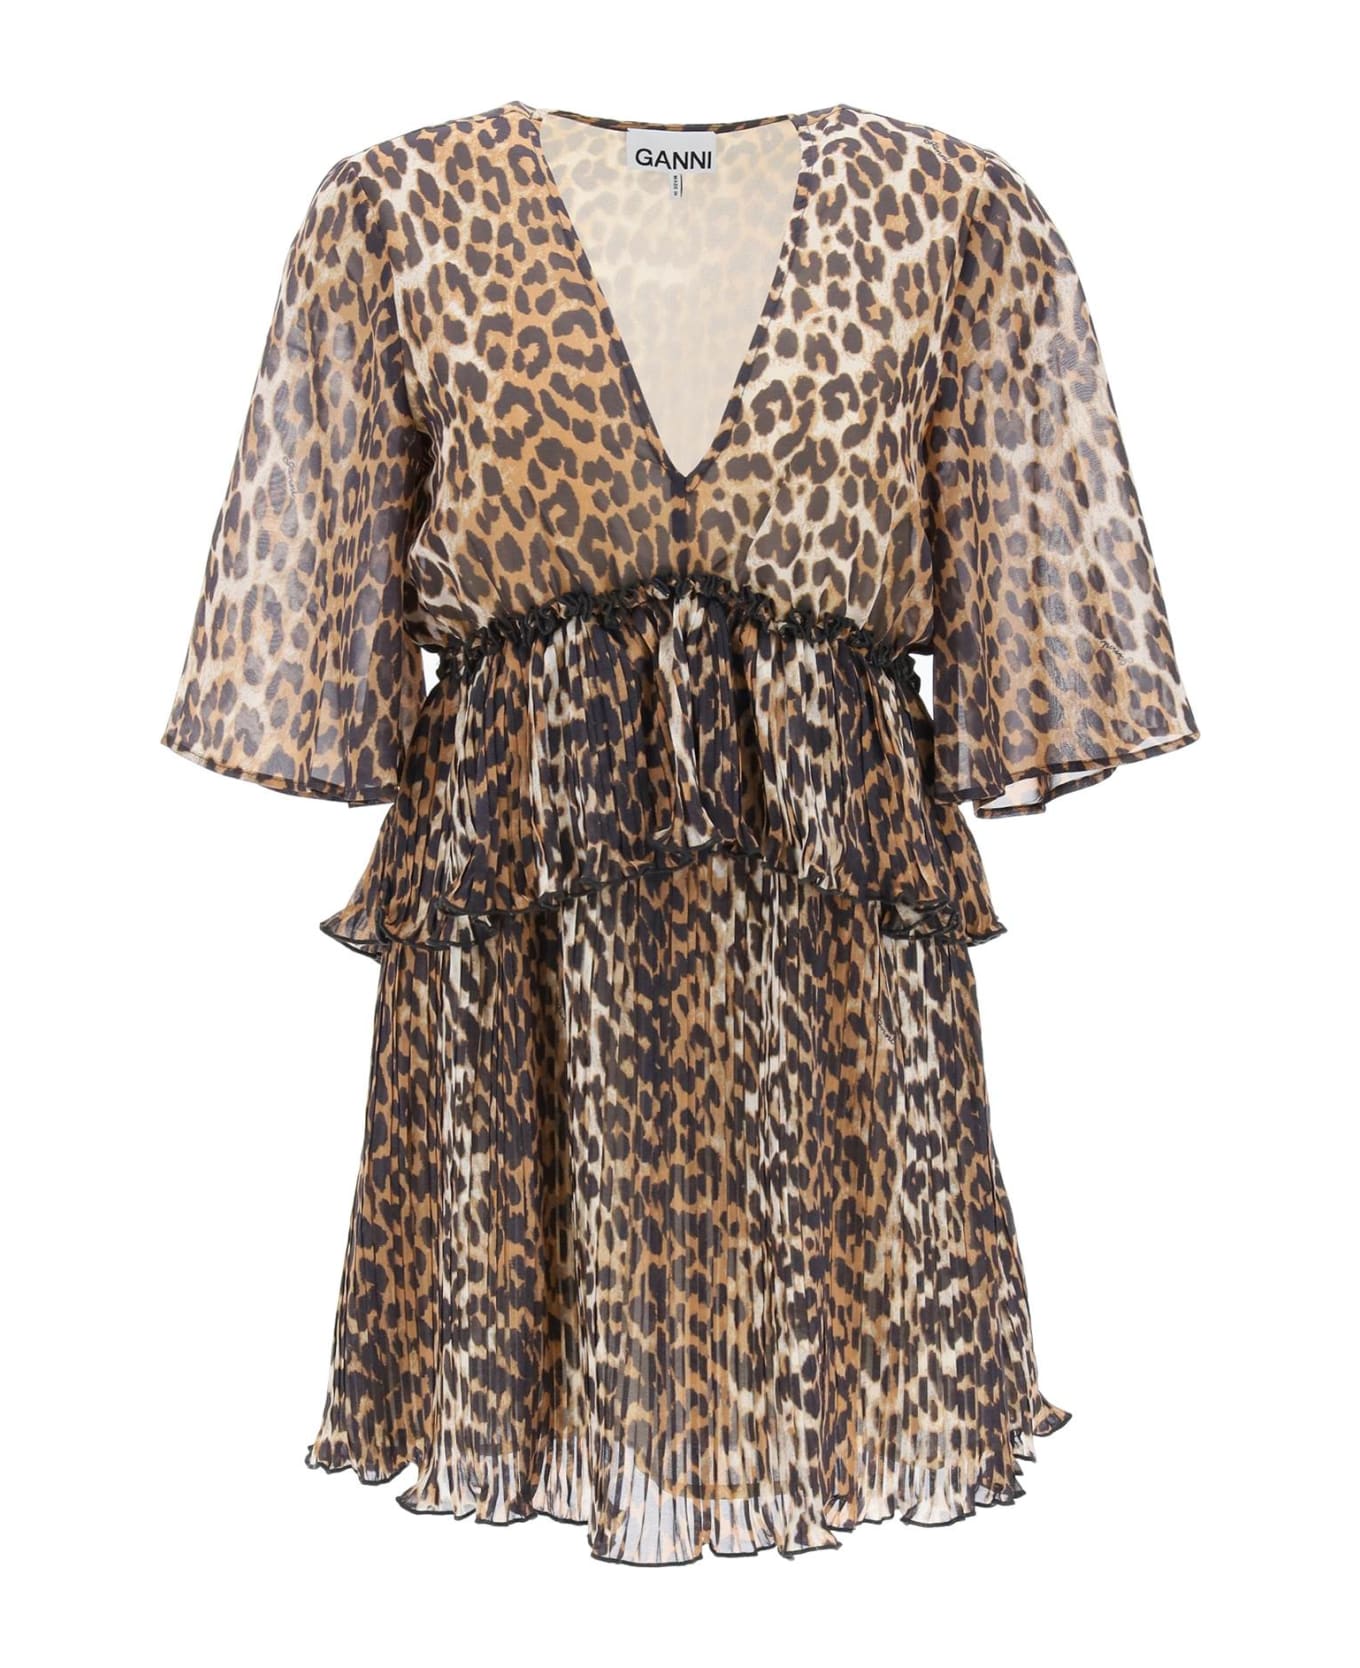 Ganni Pleated Mini Dress With Leopard Motif - ALMOND MILK (Beige)